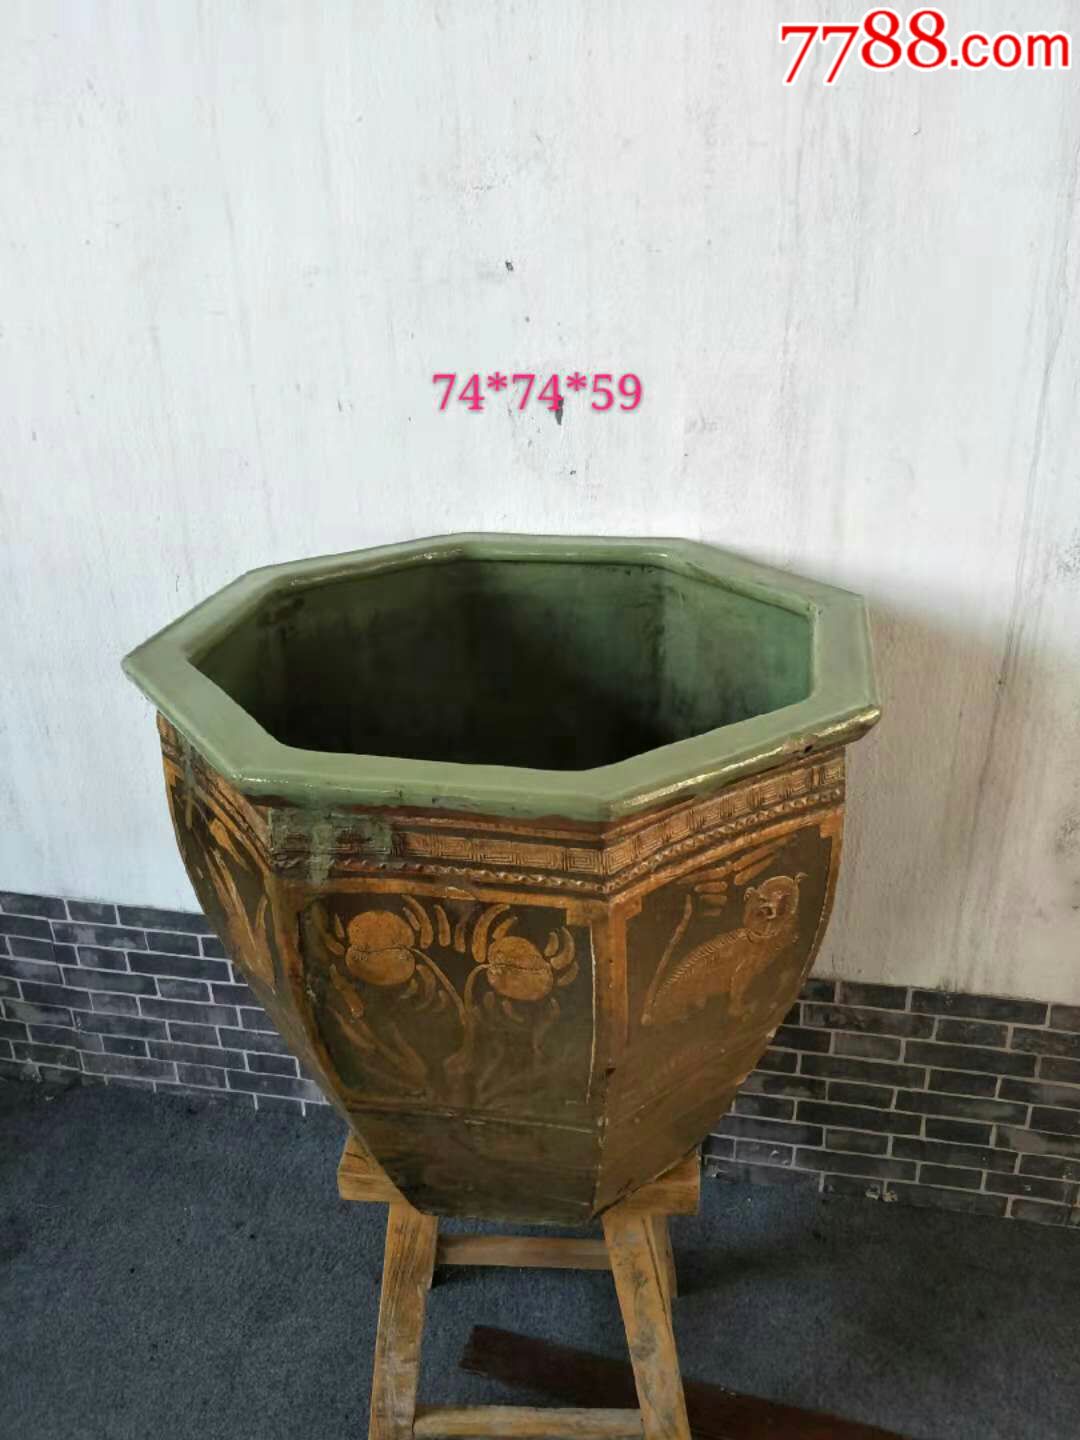 古代花缸图片及价格图片